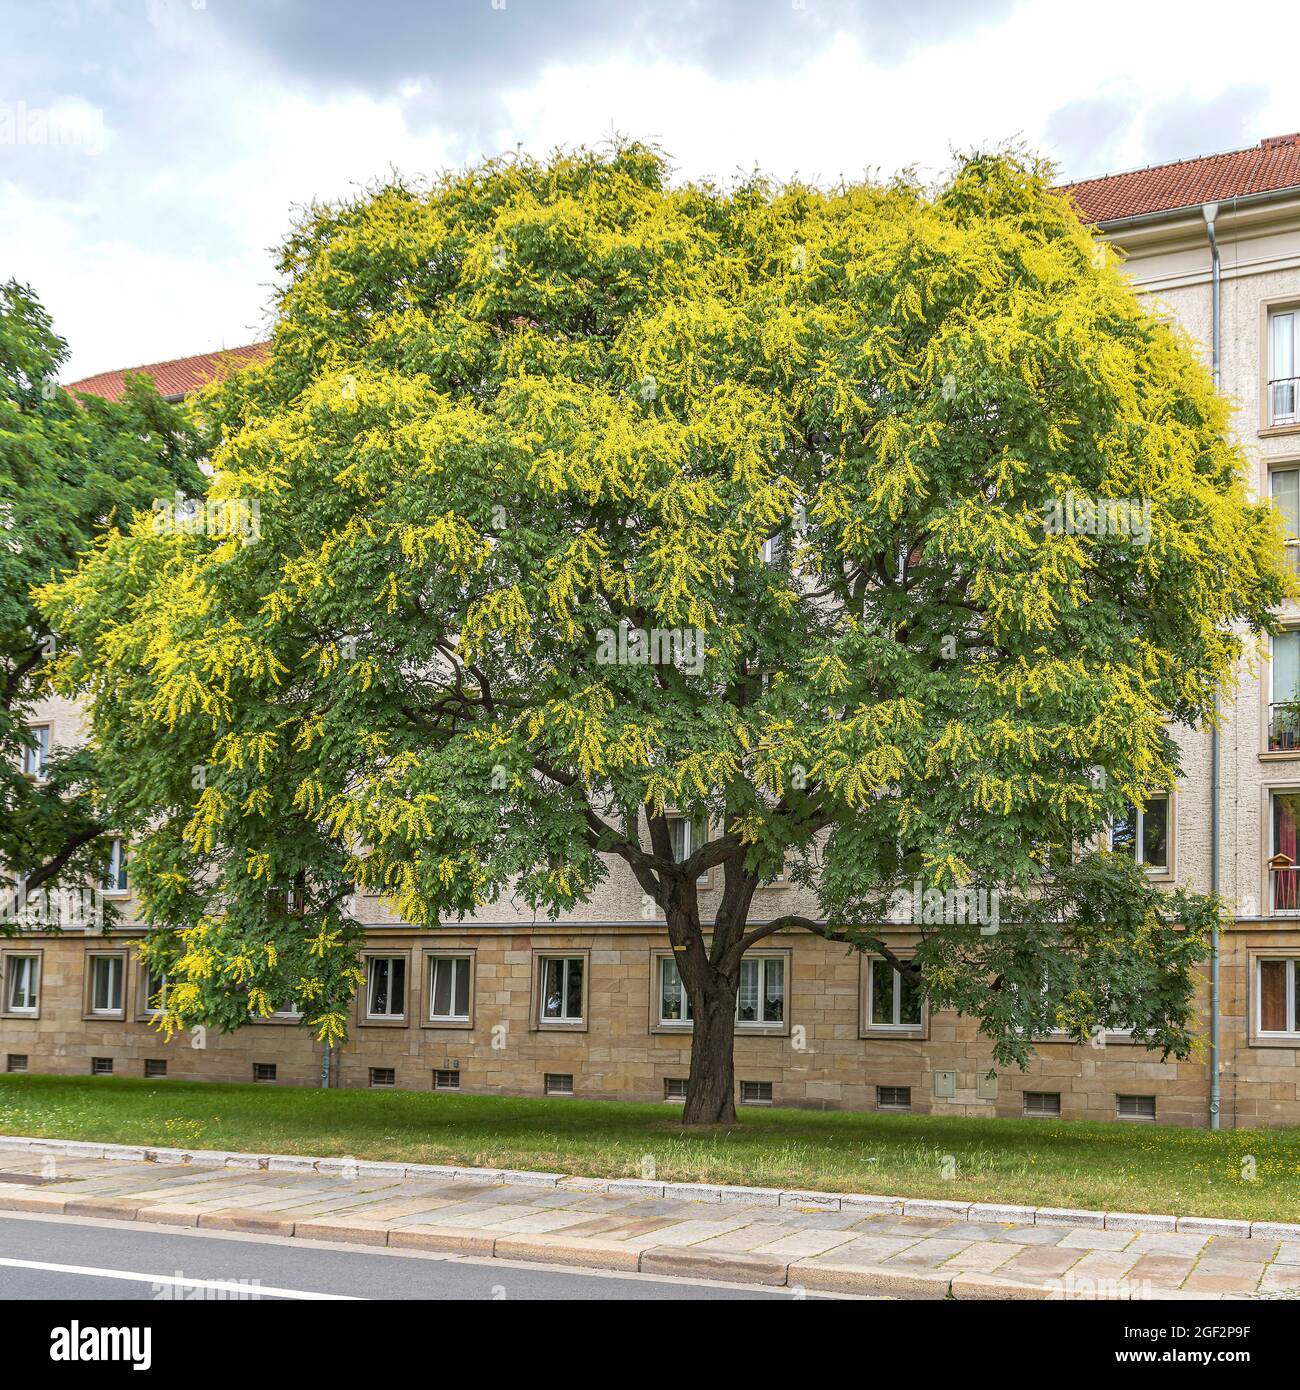 golden rain tree (Koelreuteria paniculata), blooming, Germany Stock Photo